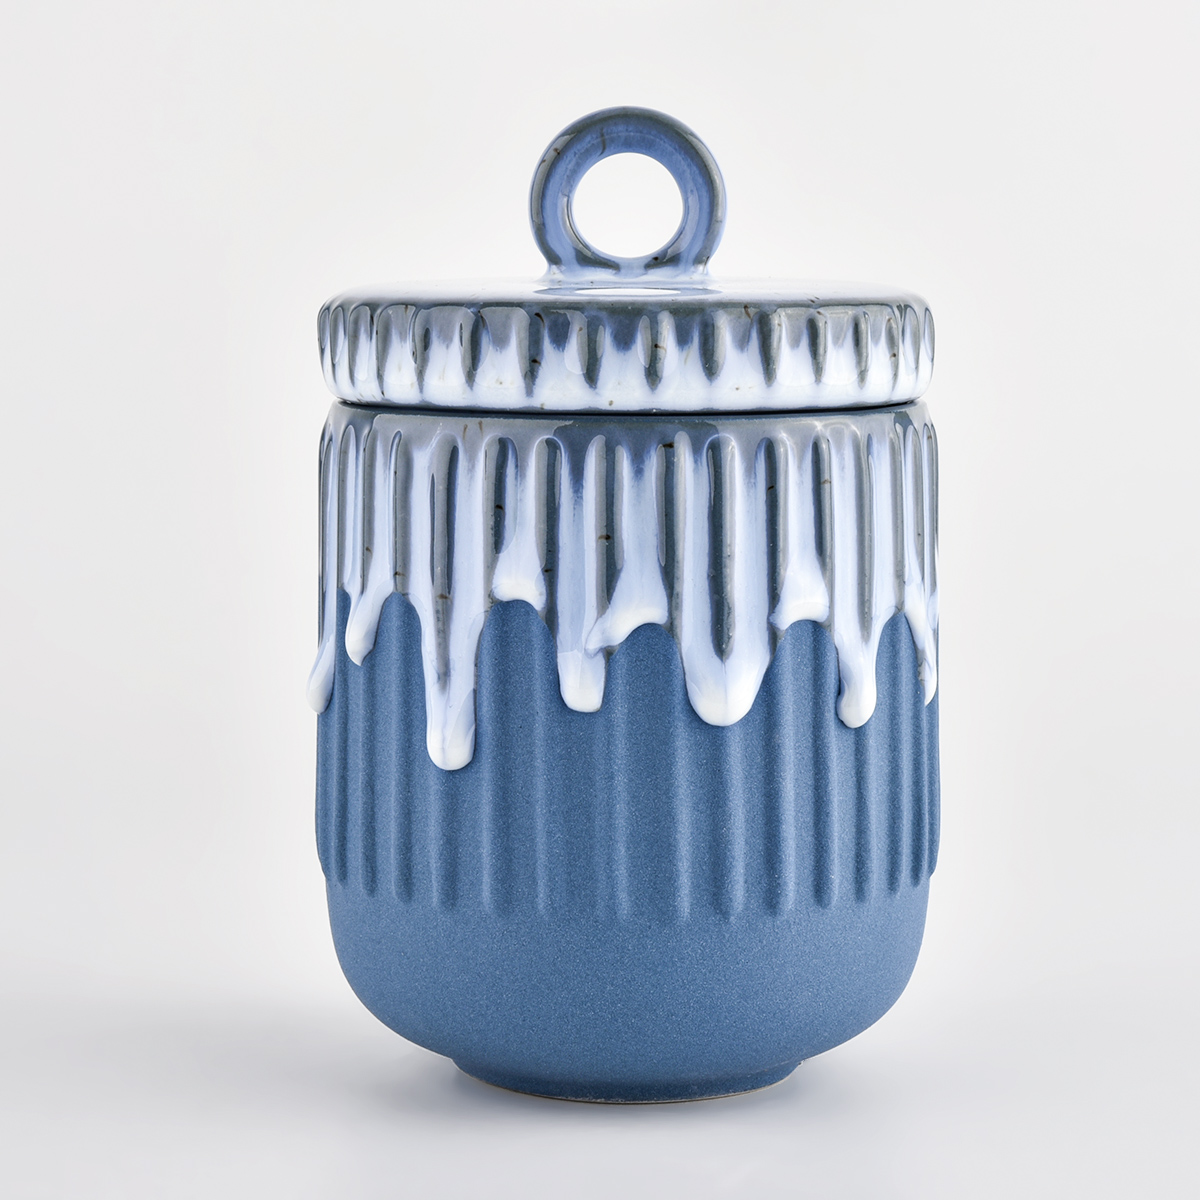 cobalt blue matte glazed ceramic candle jars with lids for home decoration